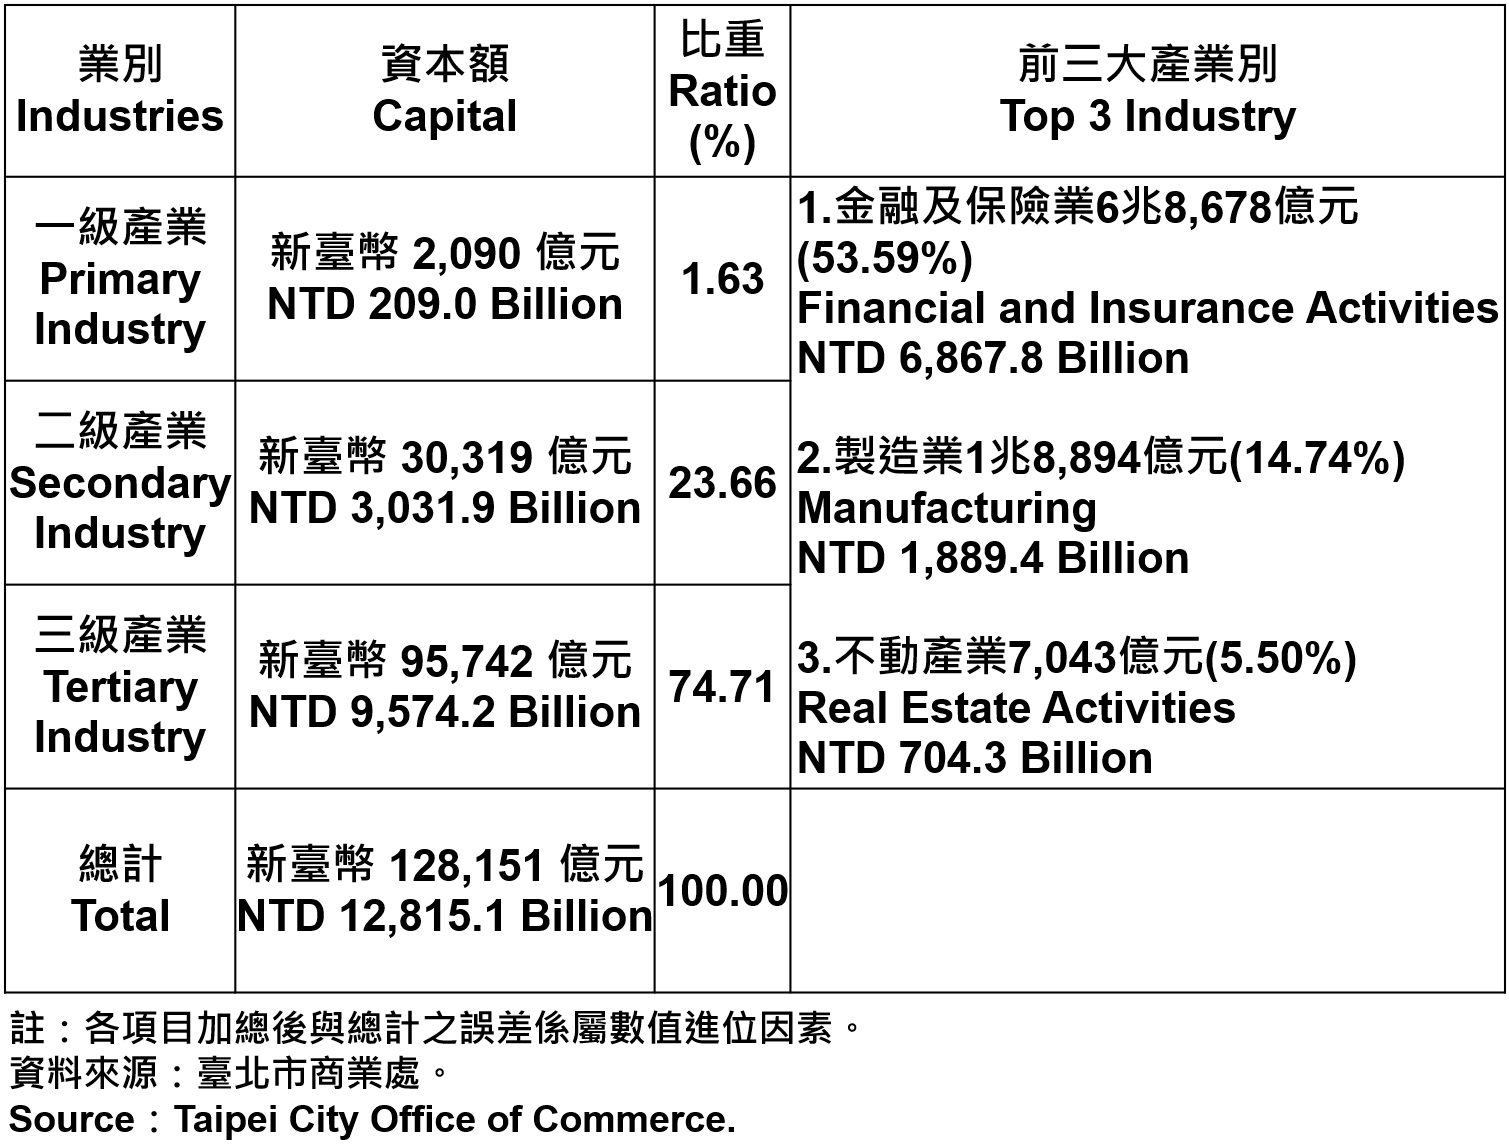 臺北市登記之公司資本額—2020Q2 Capital for the Companies and Firms Registered in Taipei City—2020Q2